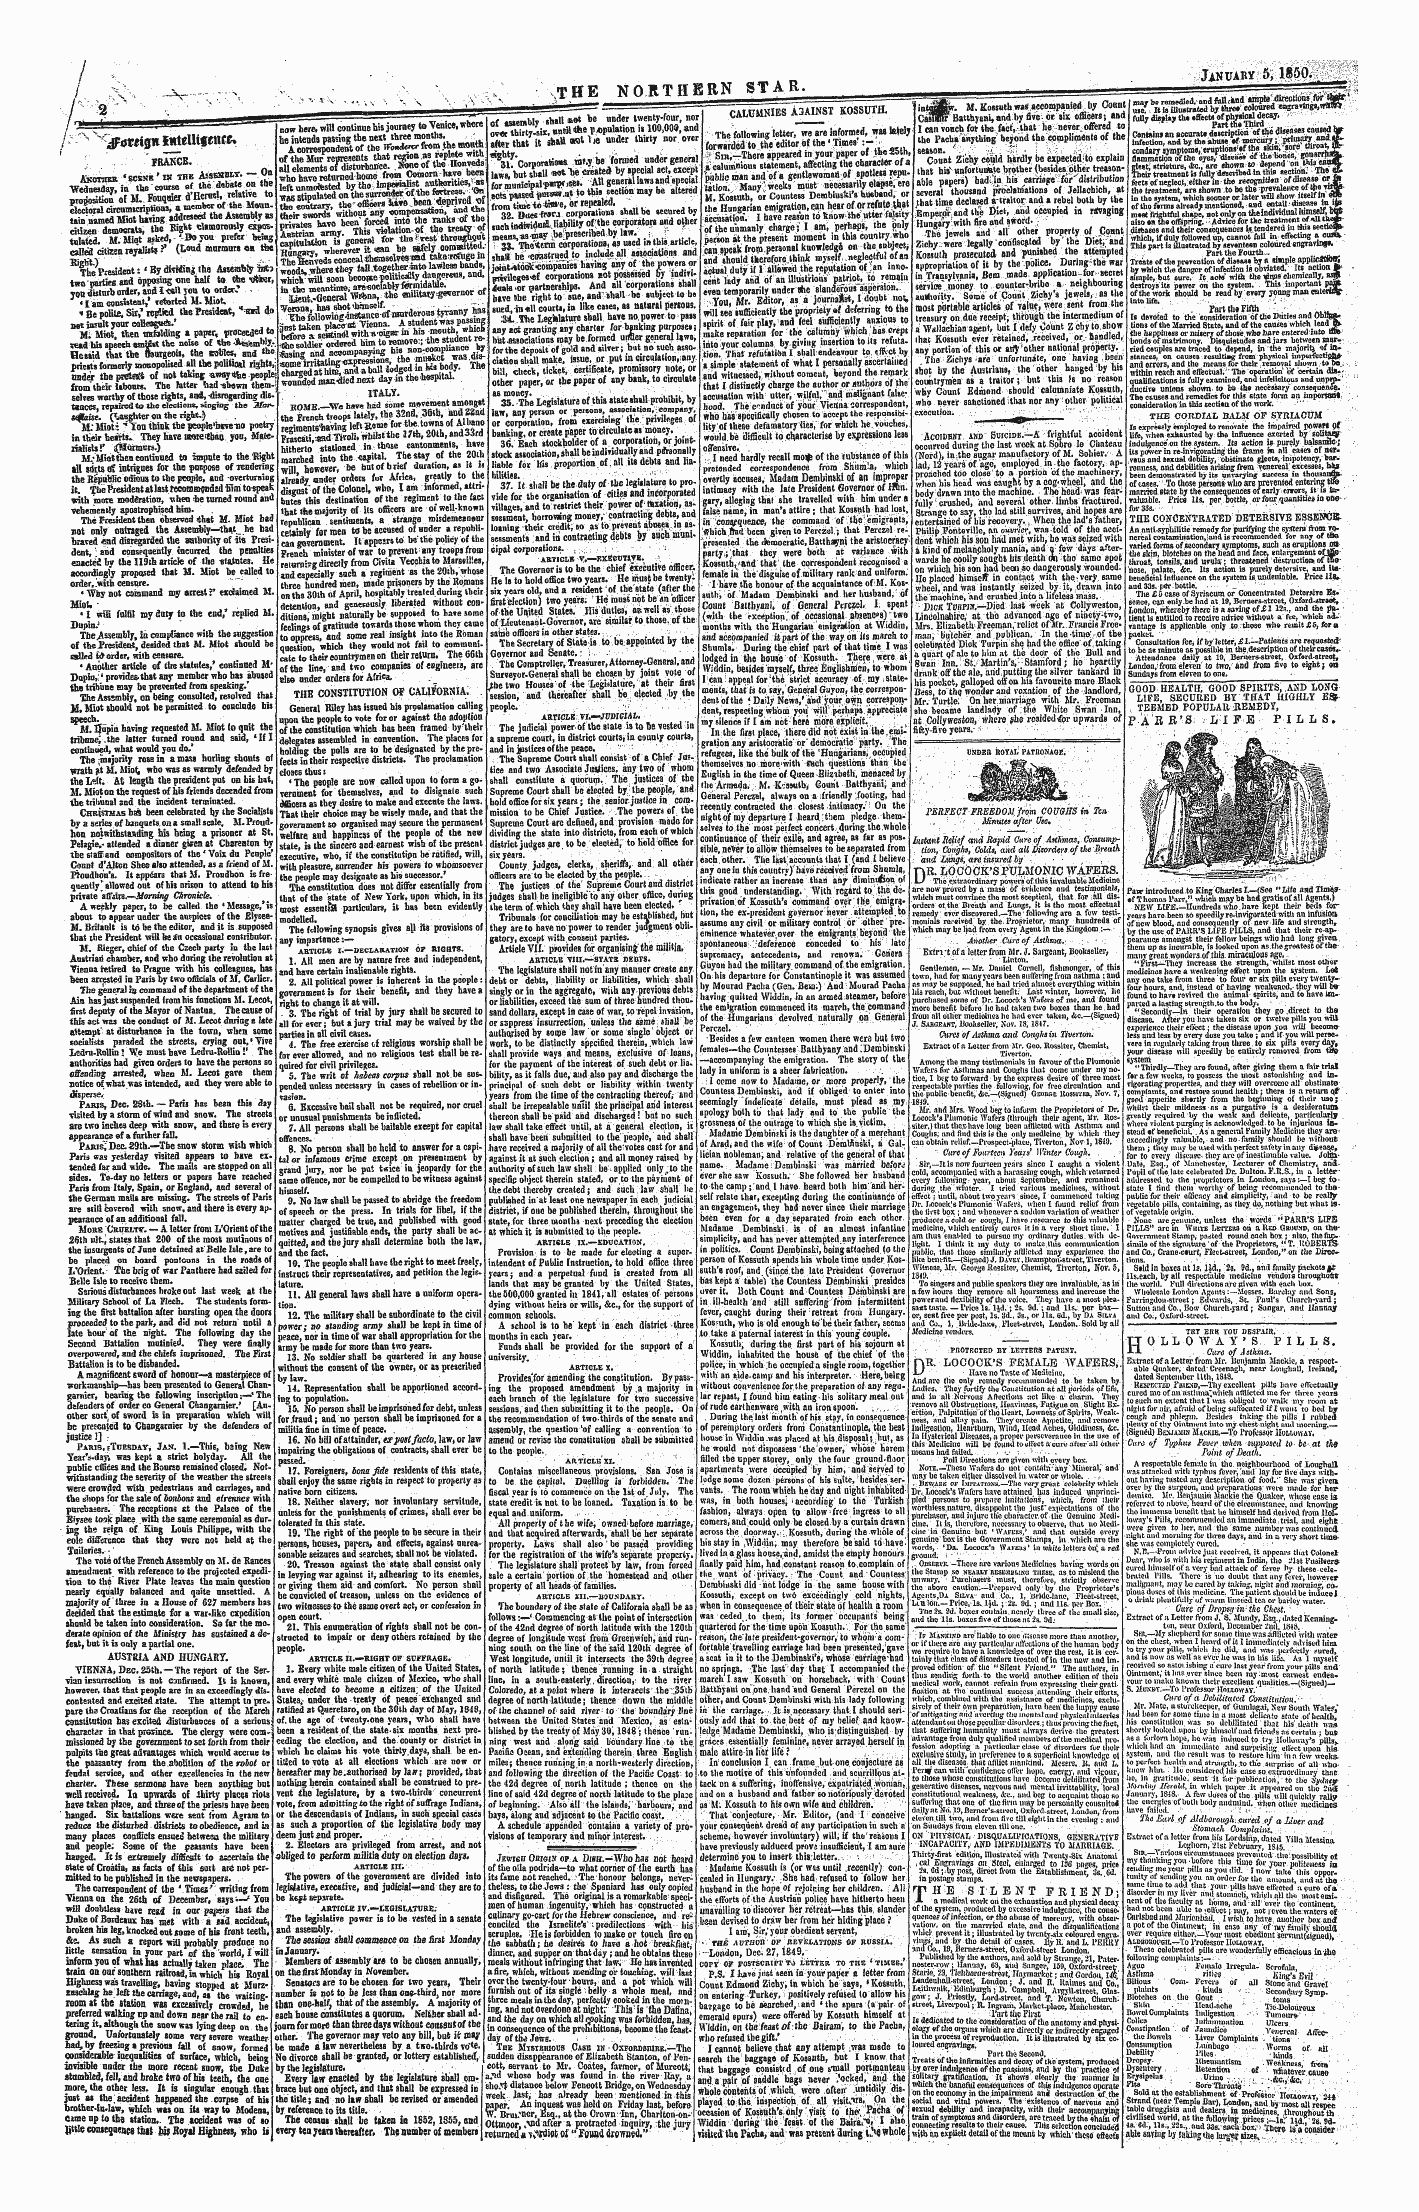 Northern Star (1837-1852): jS F Y, 1st edition - ¦ ? ^ N ^Ffure Igtt Fciteuiftntu